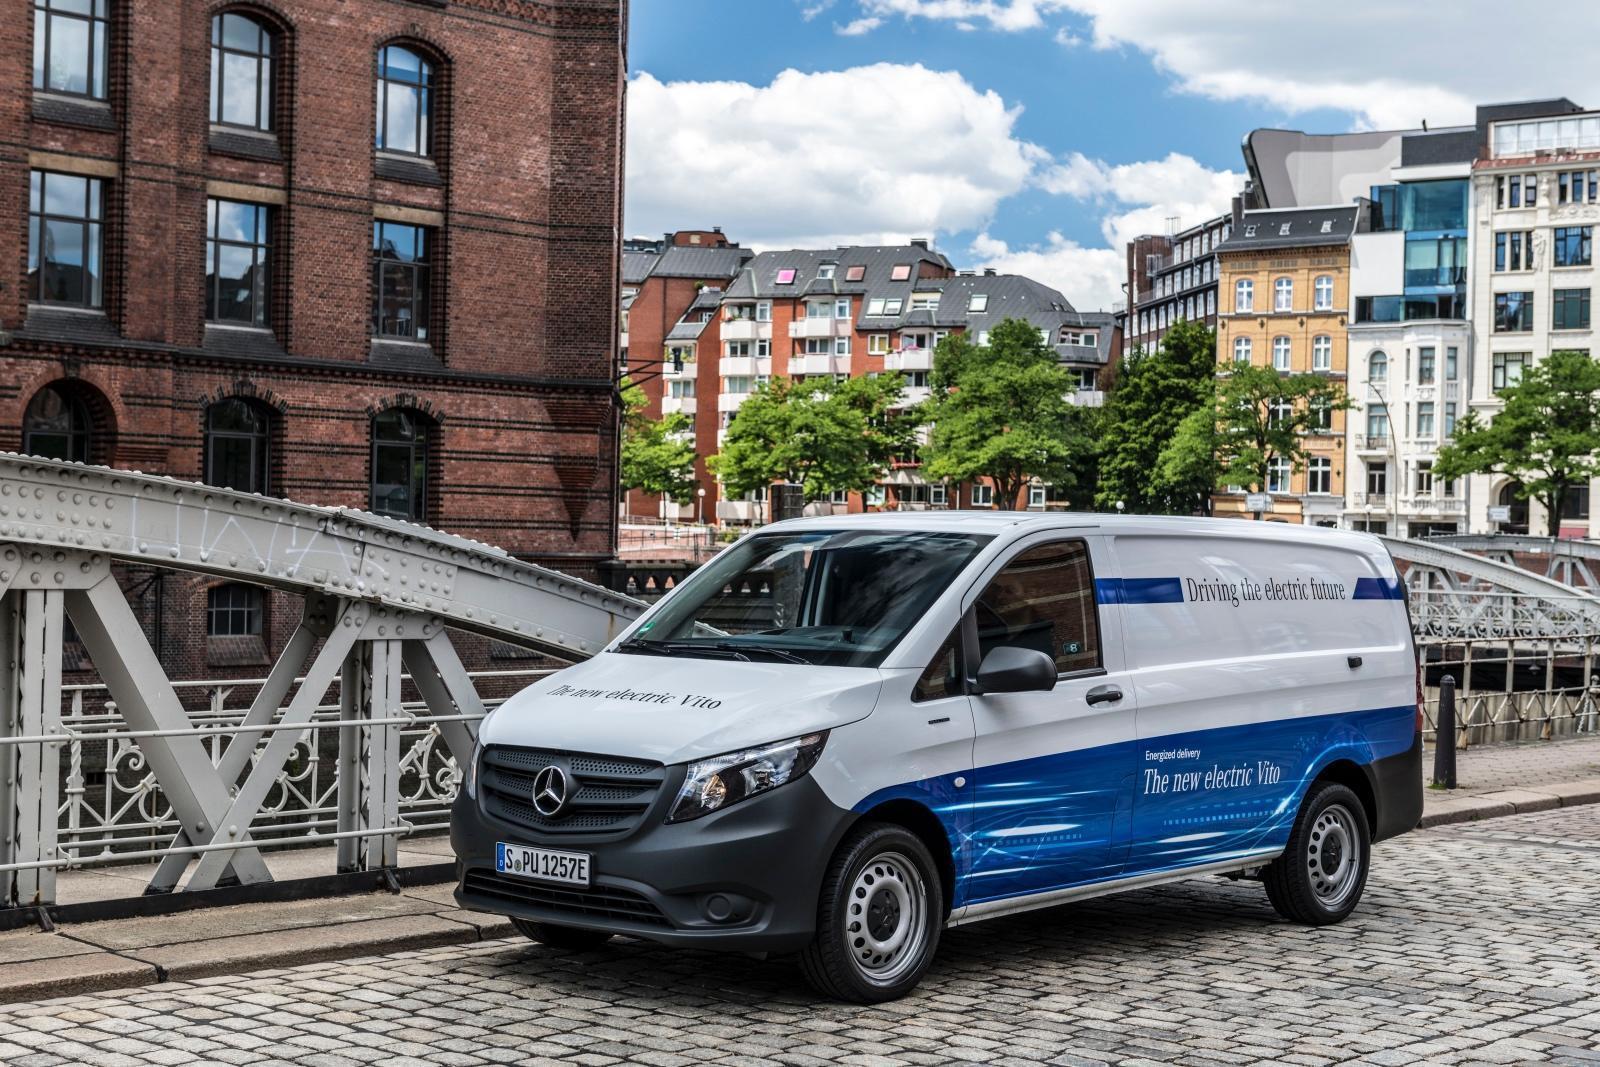 Lokal emissionsfreie Mobilität: Mercedes-Benz eVito fit für den urbanen Einsatz // Local zero-emissions mobility: Mercedes Benz eVito fit for urban life